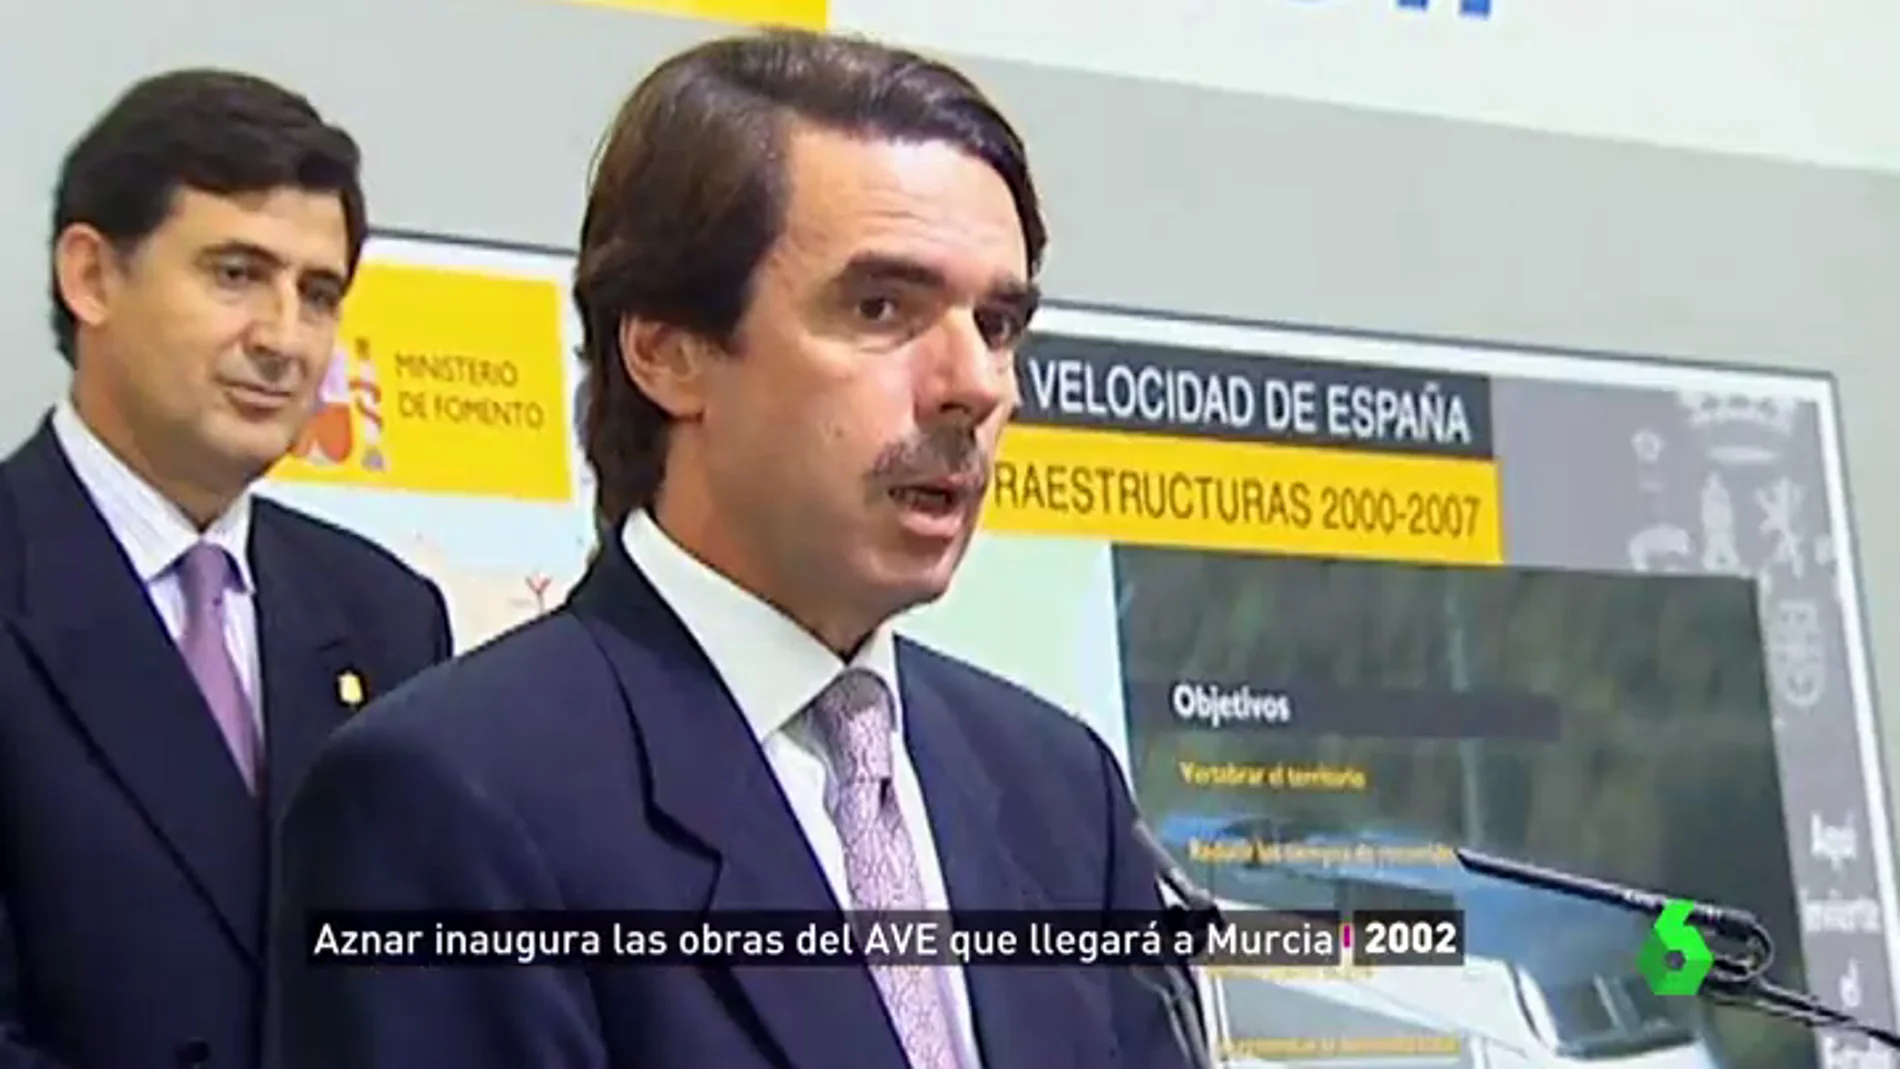 Aznar, Zapatero y Rajoy y sus promesas políticas sobre el AVE en Murcia que nunca llegó: "No creo en ningún político"